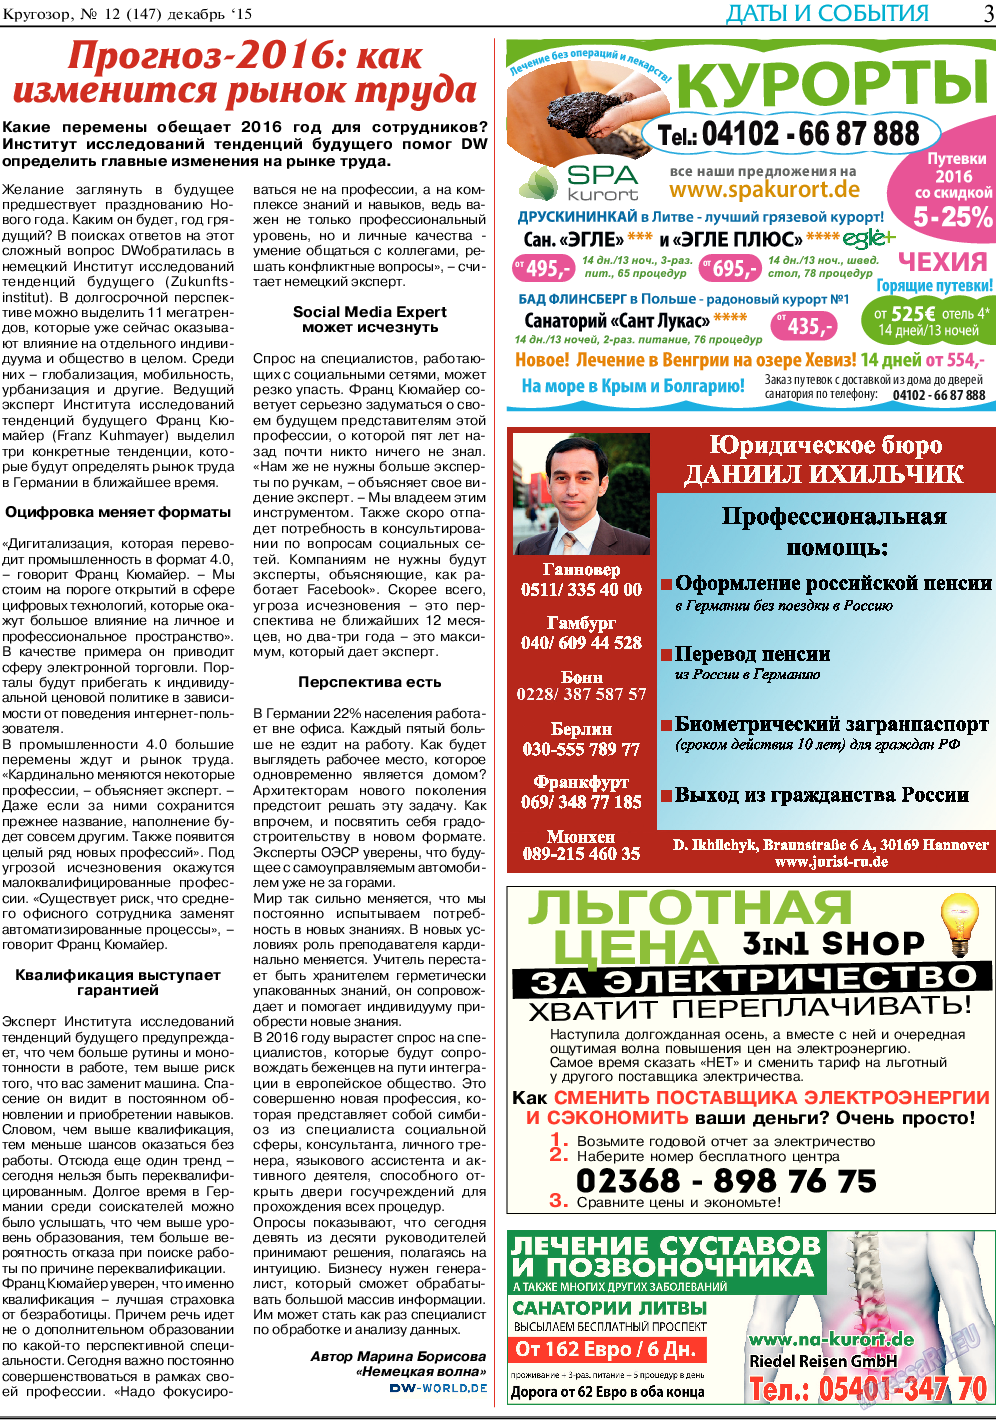 Кругозор, газета. 2015 №12 стр.3